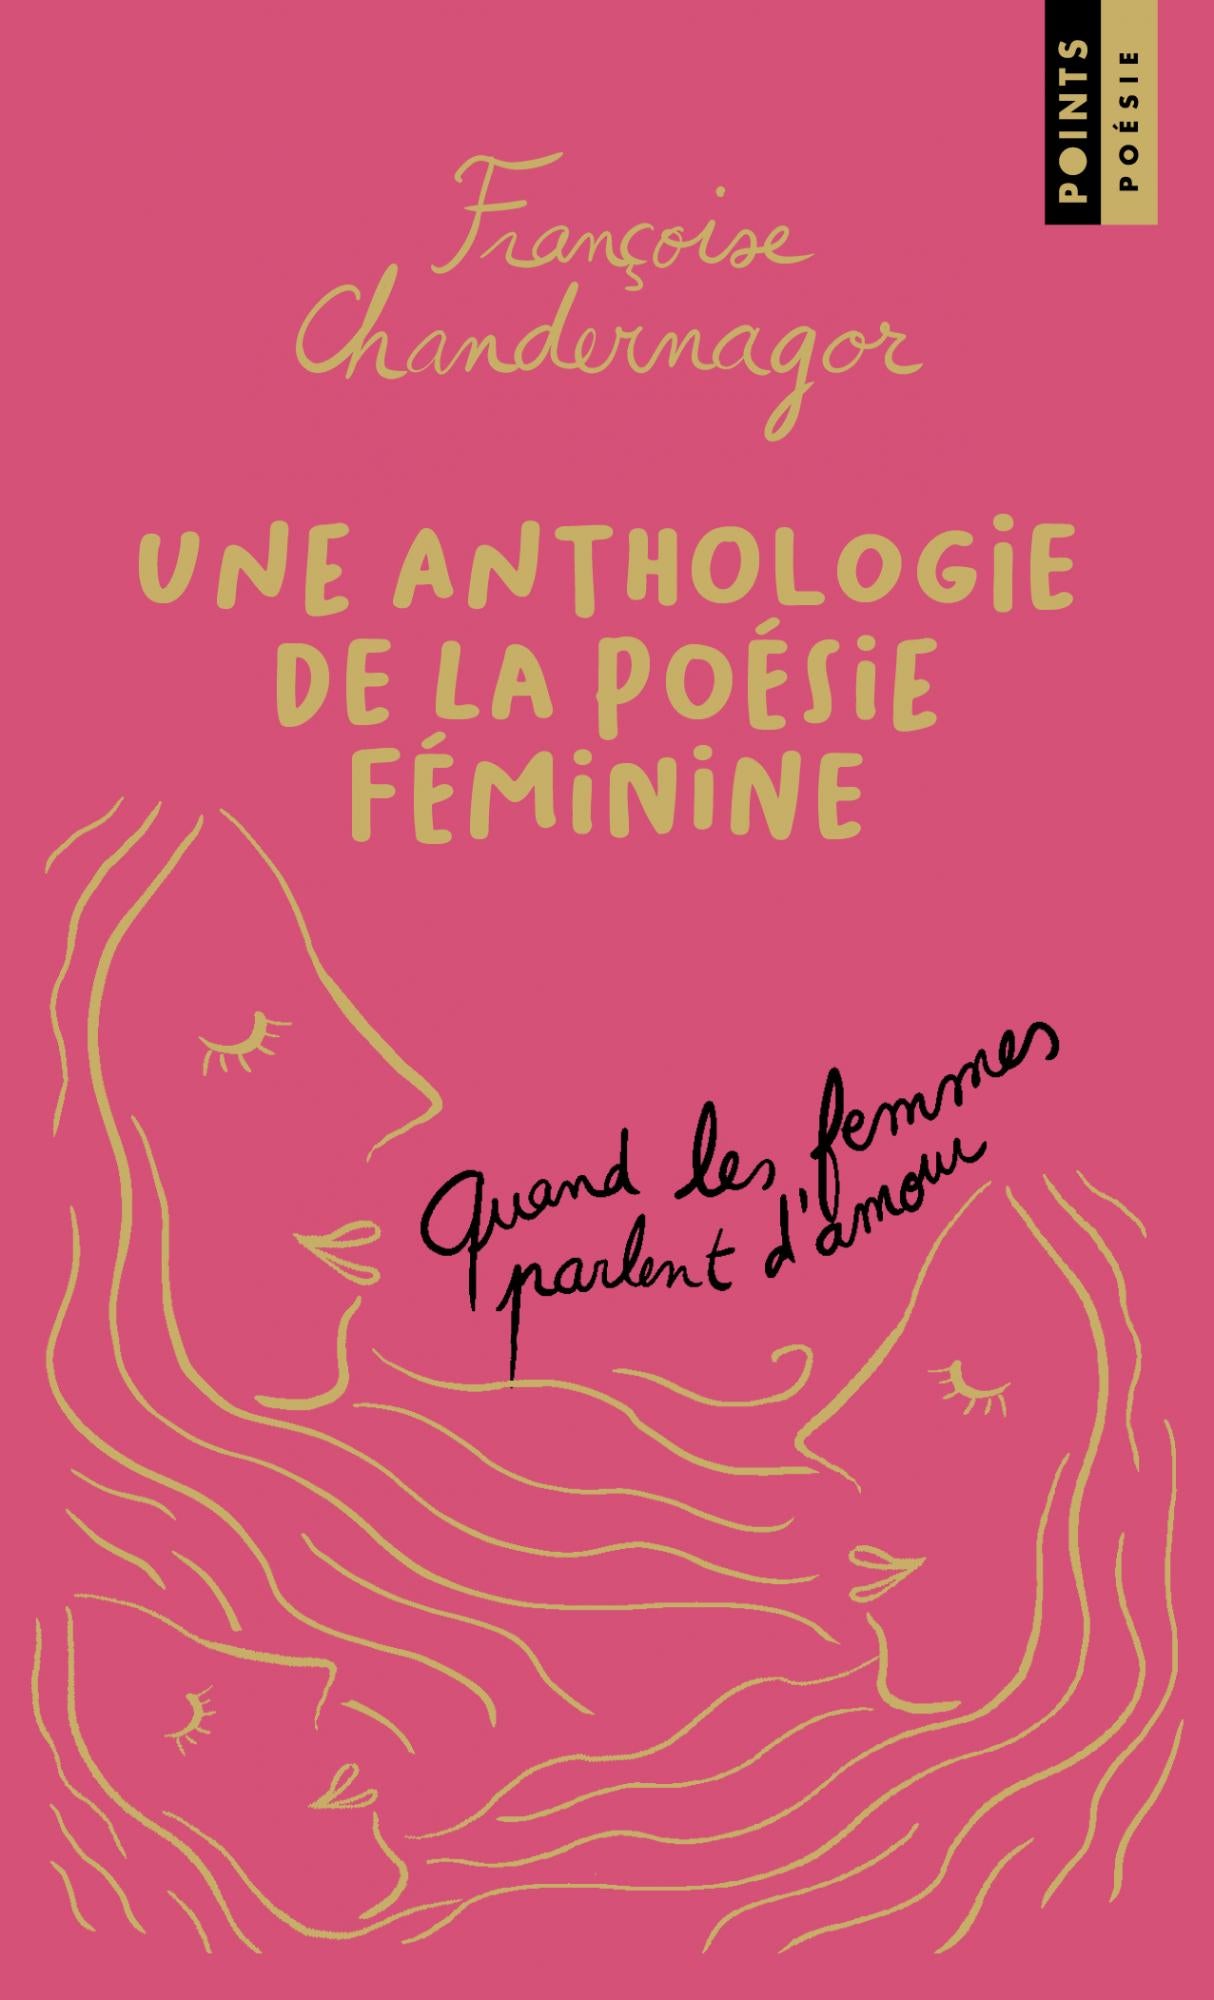 Quand les femmes parlent d’amour. Une anthologie de la poésie féminine. (Collector) - Françoise Chandernagor